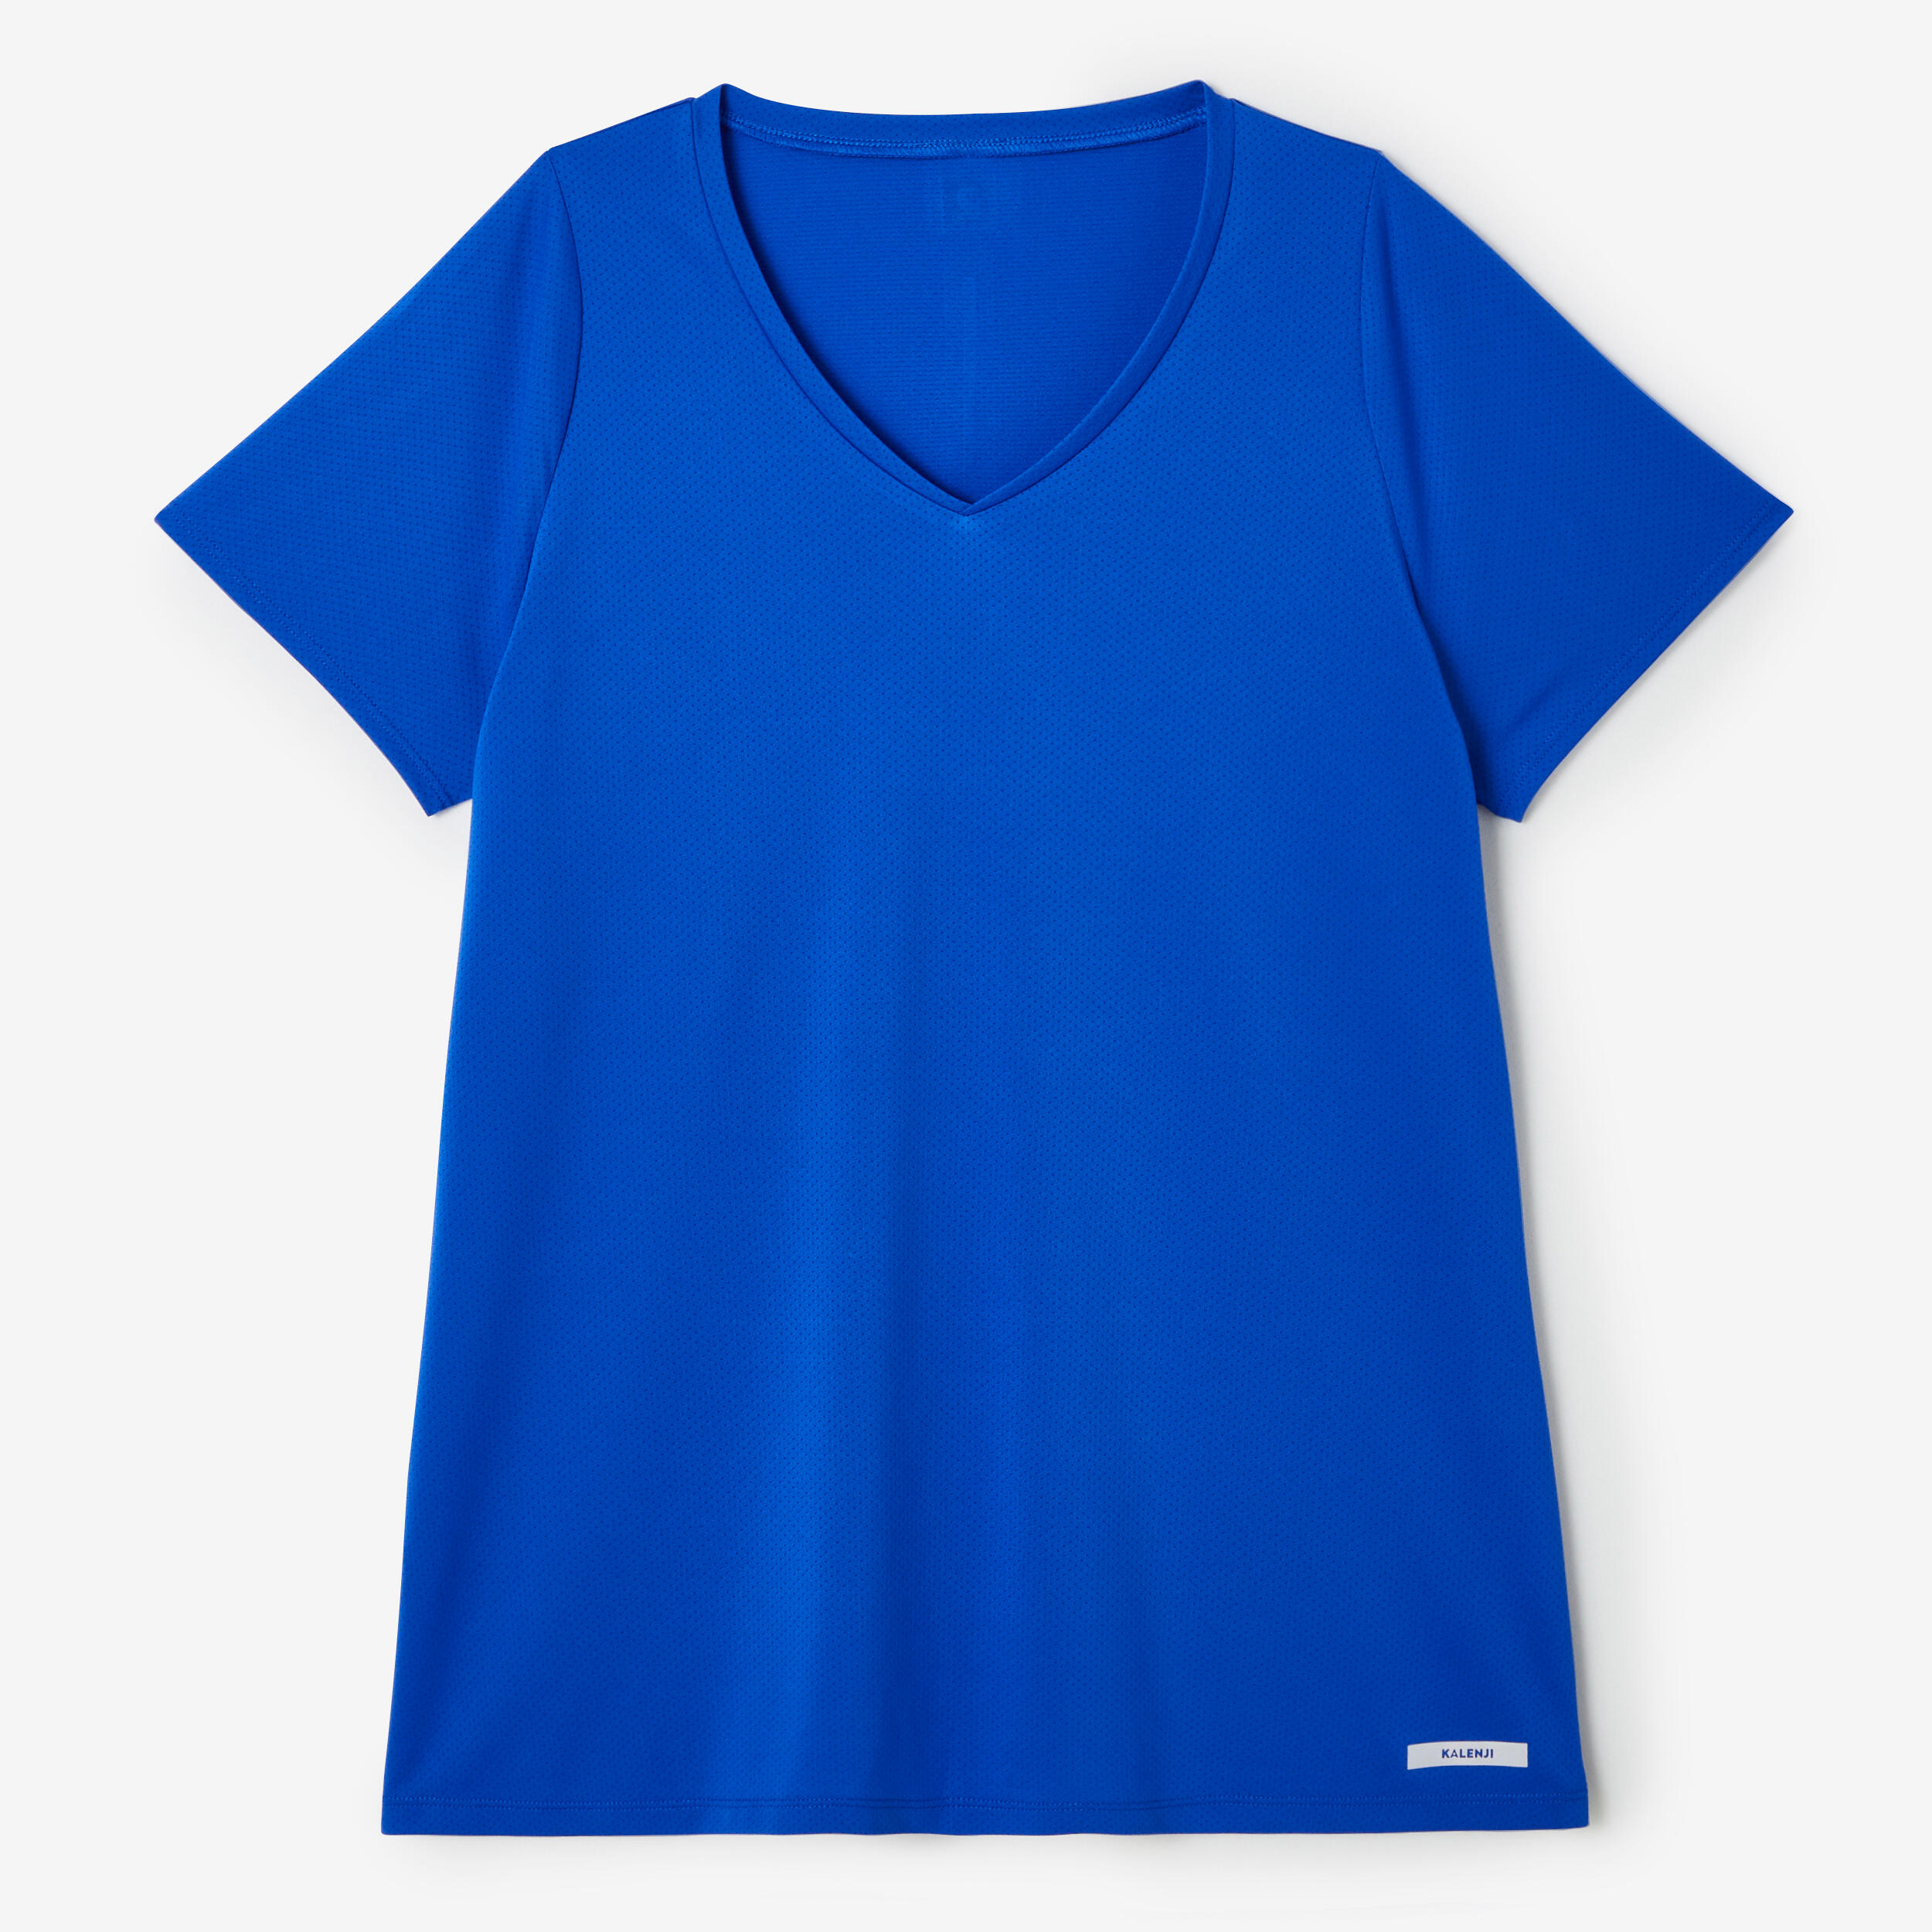 Women's short-sleeved breathable running T-shirt Dry - blue - Decathlon